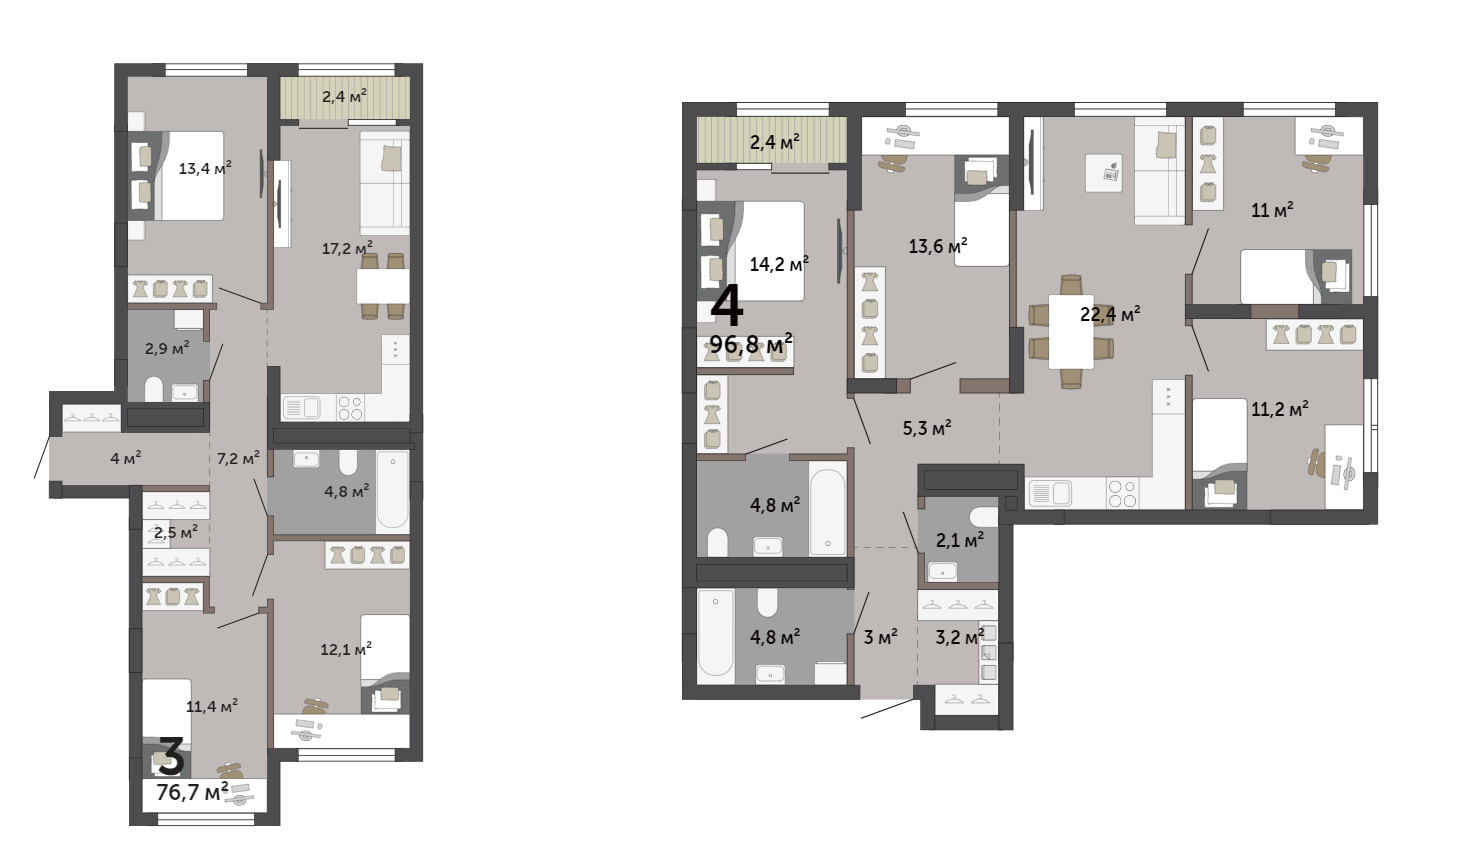 В квартирах семейного формата есть планировки и с обычными комнатами, и с мастер-спальней